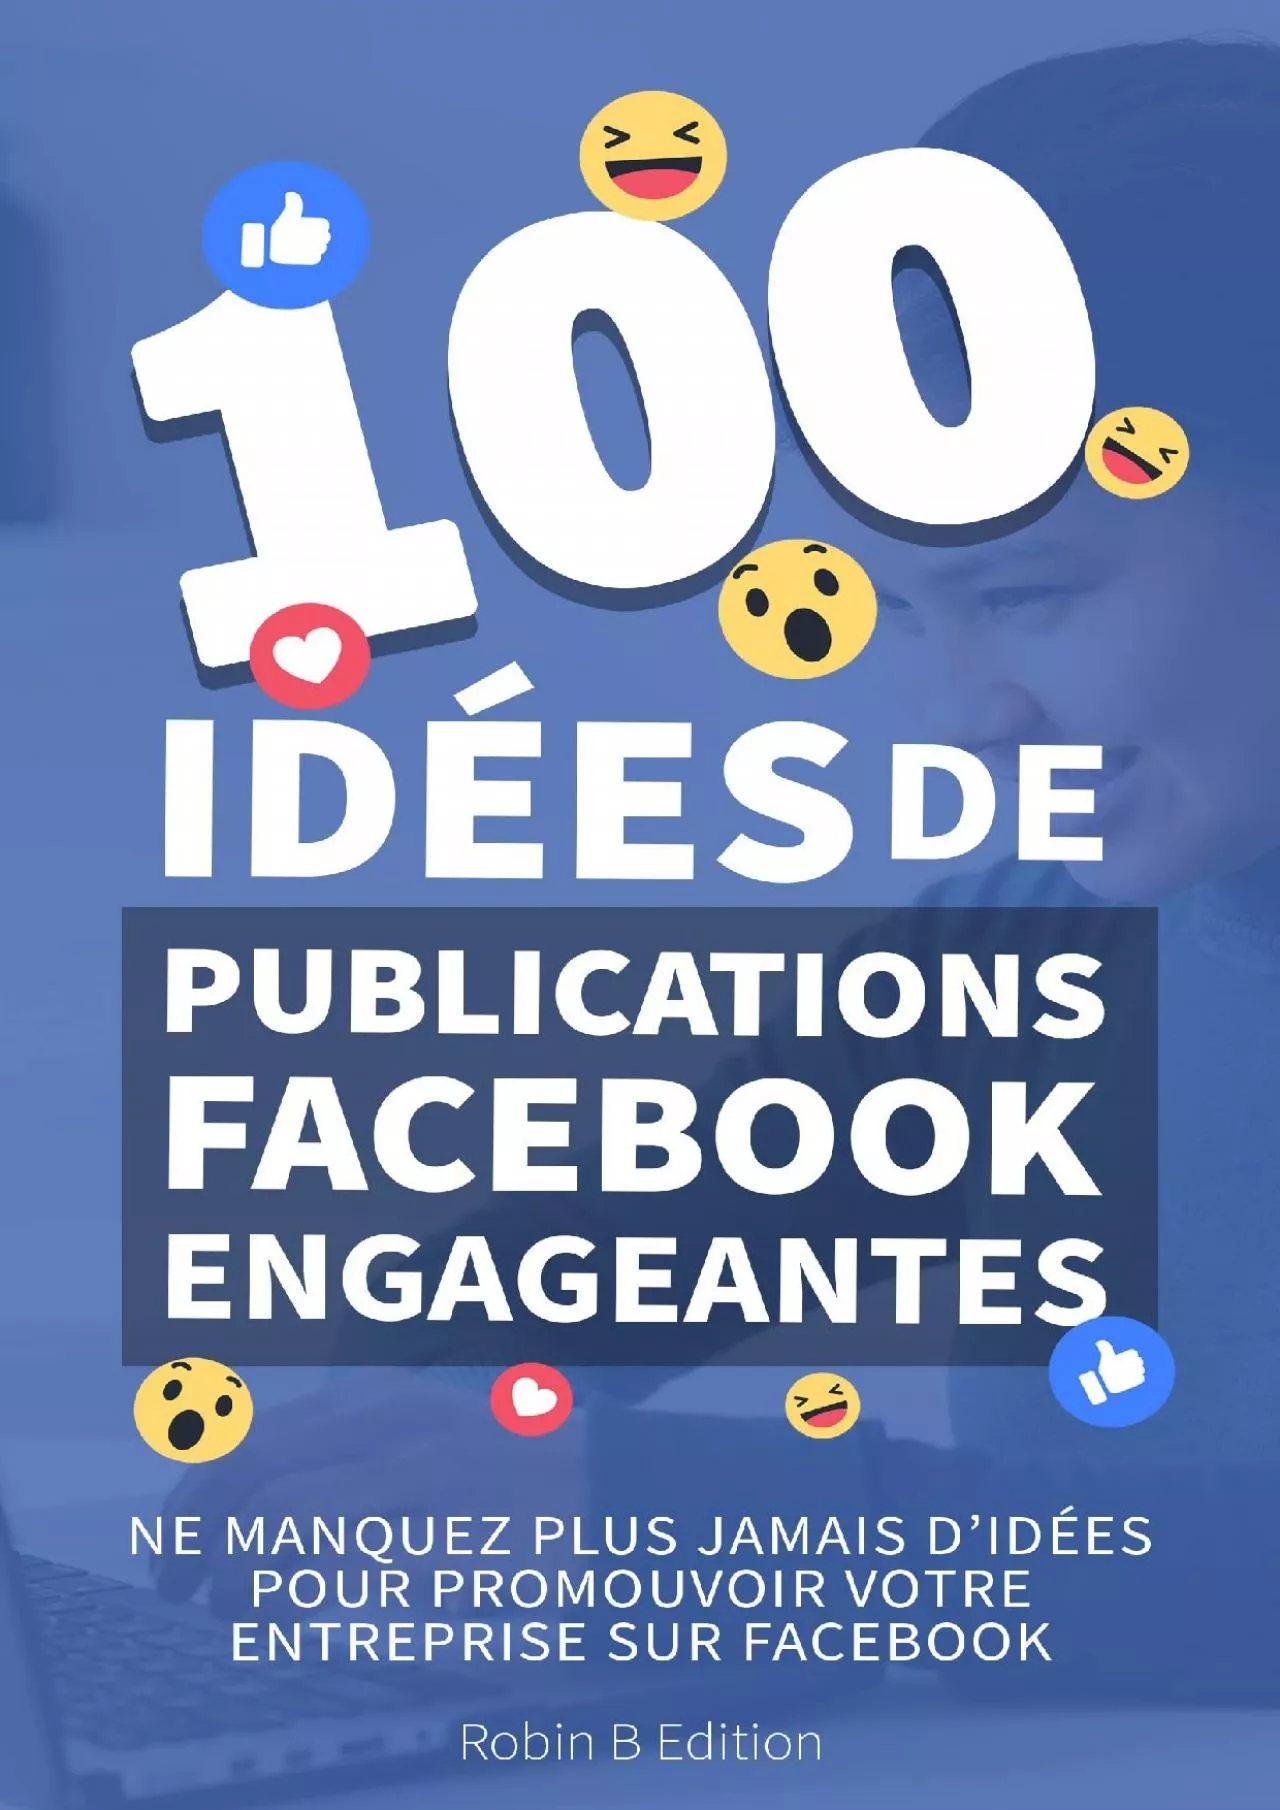 Le guide Facebook pour créer des publications variées et engageantes - 100 idées de